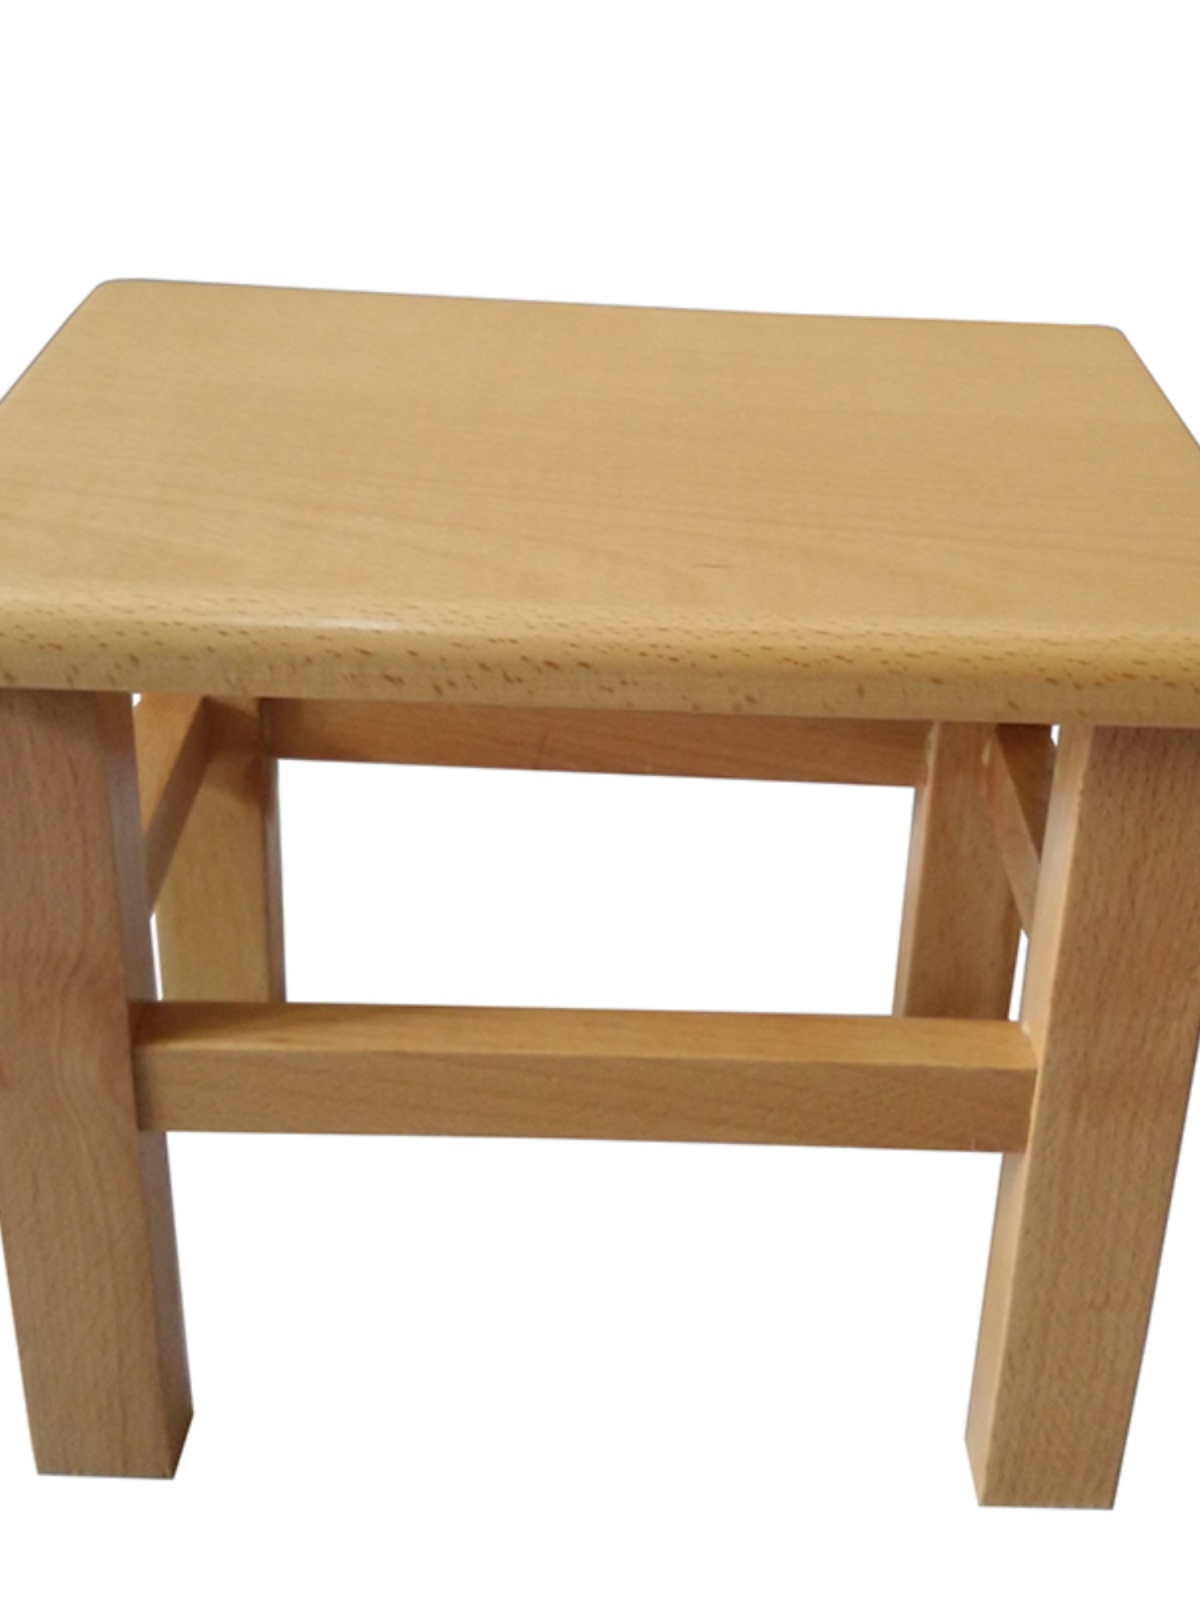 客厅沙发小矮凳实木凳子榉木方凳板凳实用换鞋凳家用整装精品特惠